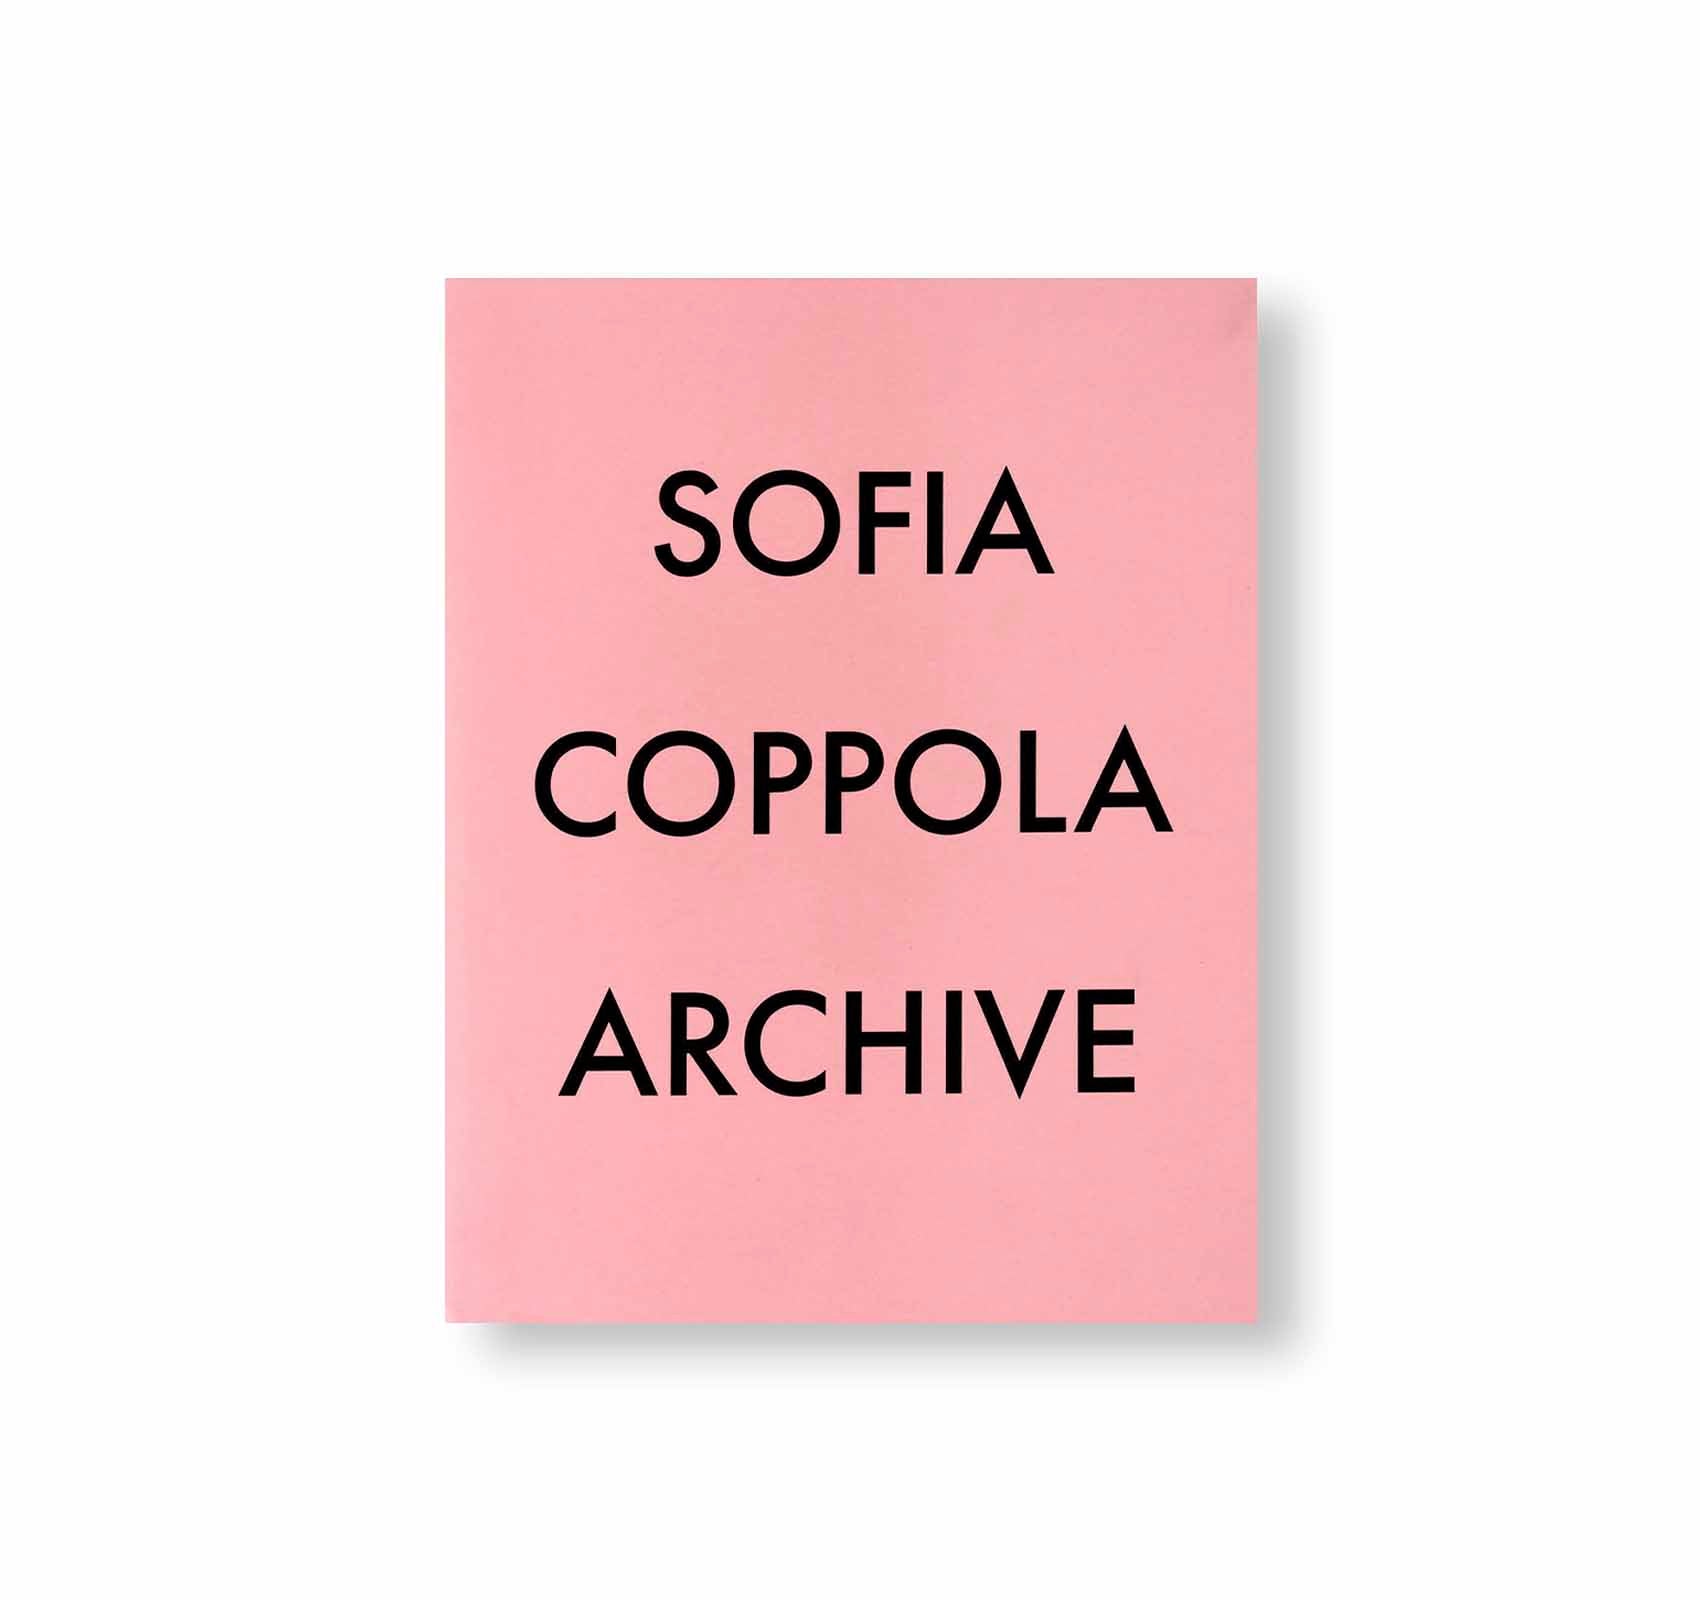 ご期待に添えず申し訳ありませんSOFIA COPPOLA ARCHIVE 特典 ポストカード ソフィアコッポラ